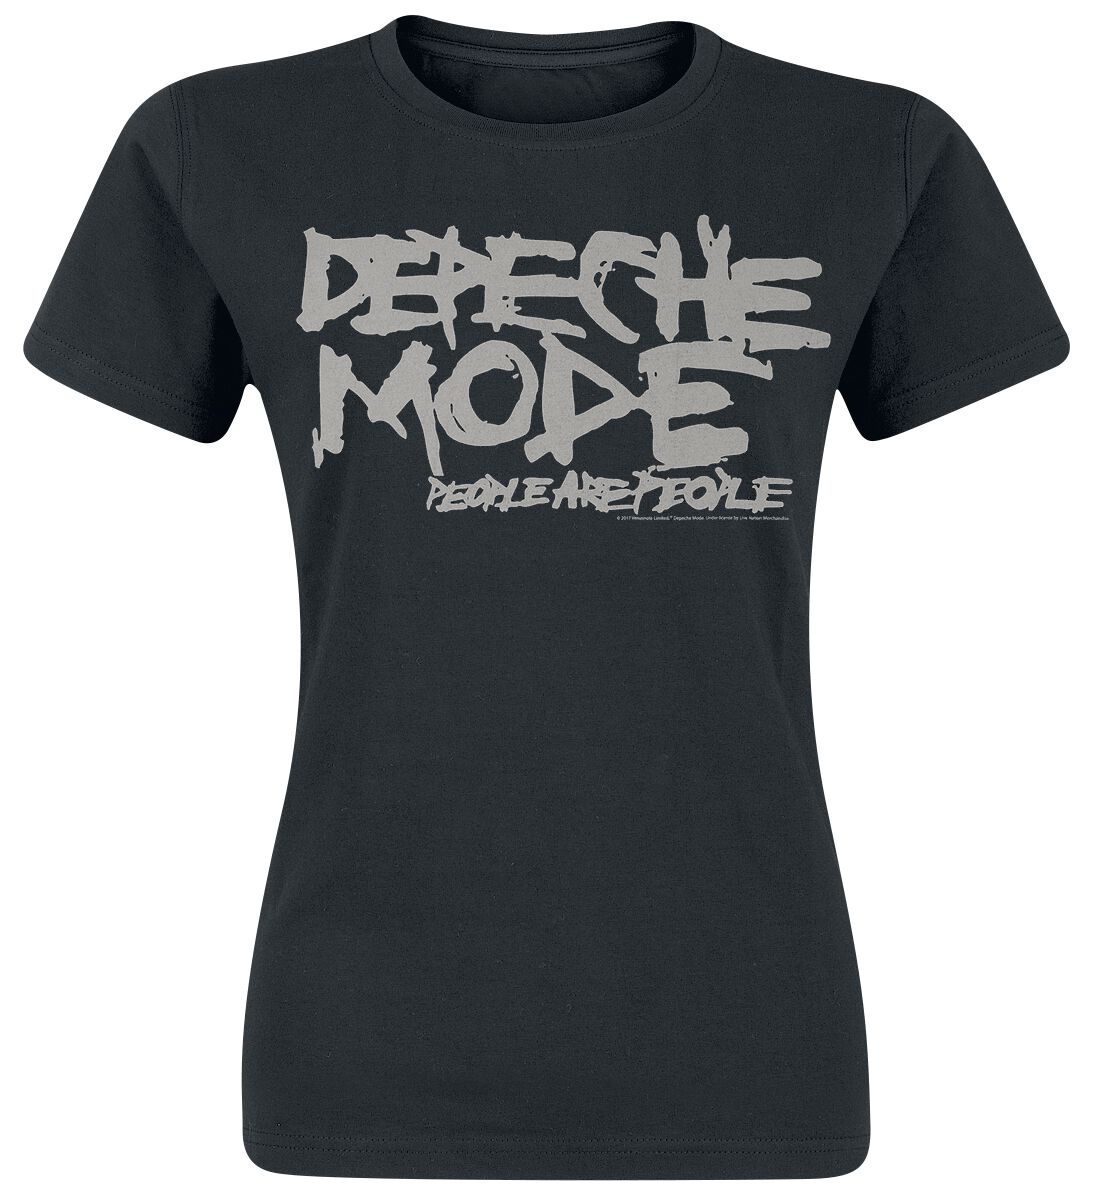 T-Shirt Manches courtes de Depeche Mode - People Are People - S à XXL - pour Femme - noir